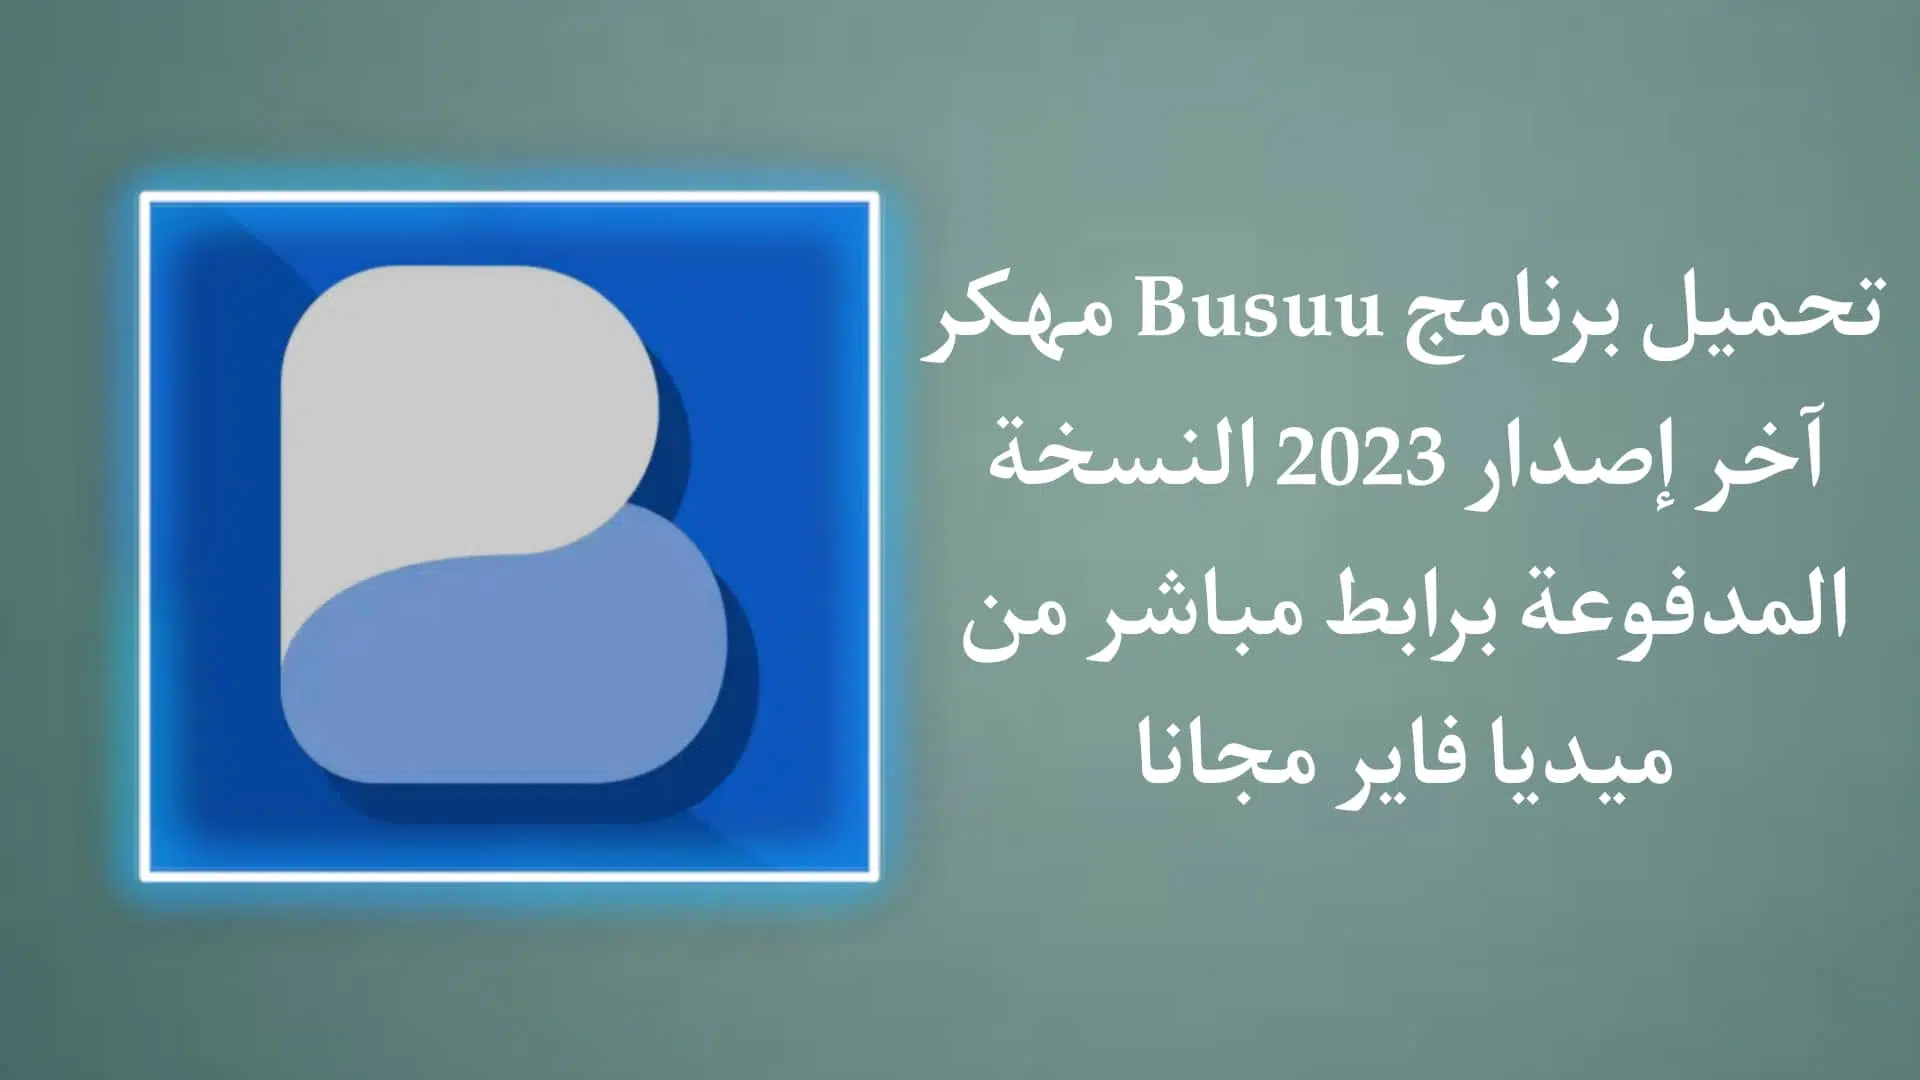 تحميل برنامج busuu مهكر آخر اصدار 2023 النسخة المدفوعة مجانا